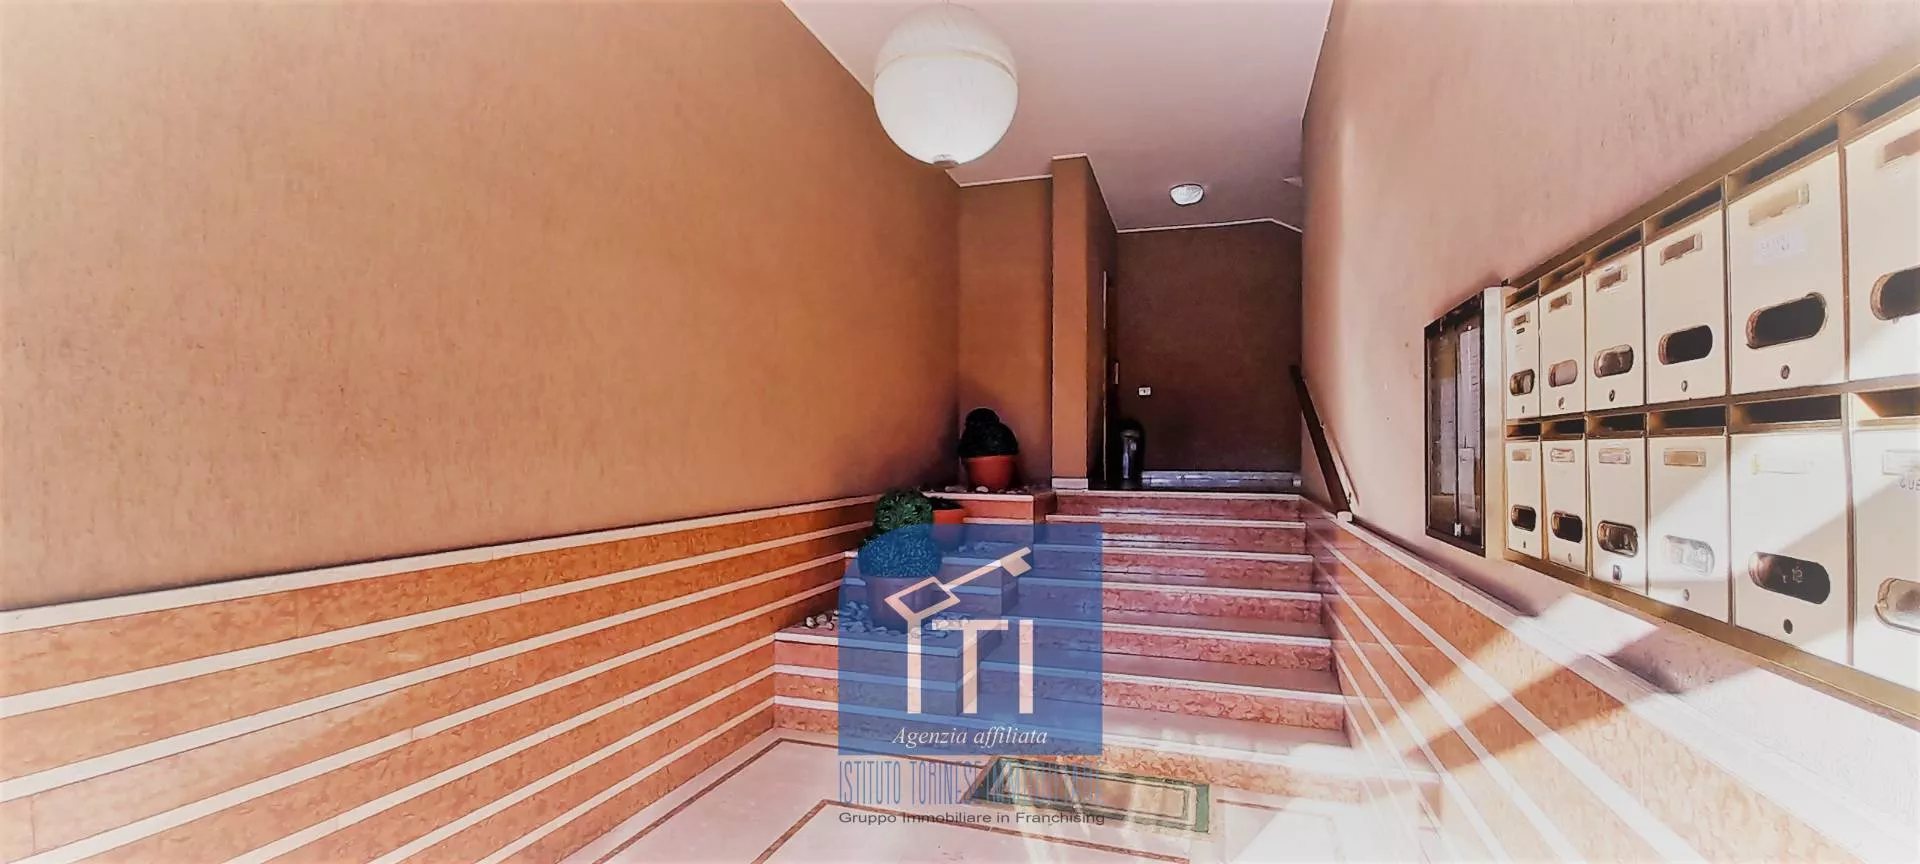 Immagine per Appartamento in vendita a Cassino PIAZZA GARIBALDI